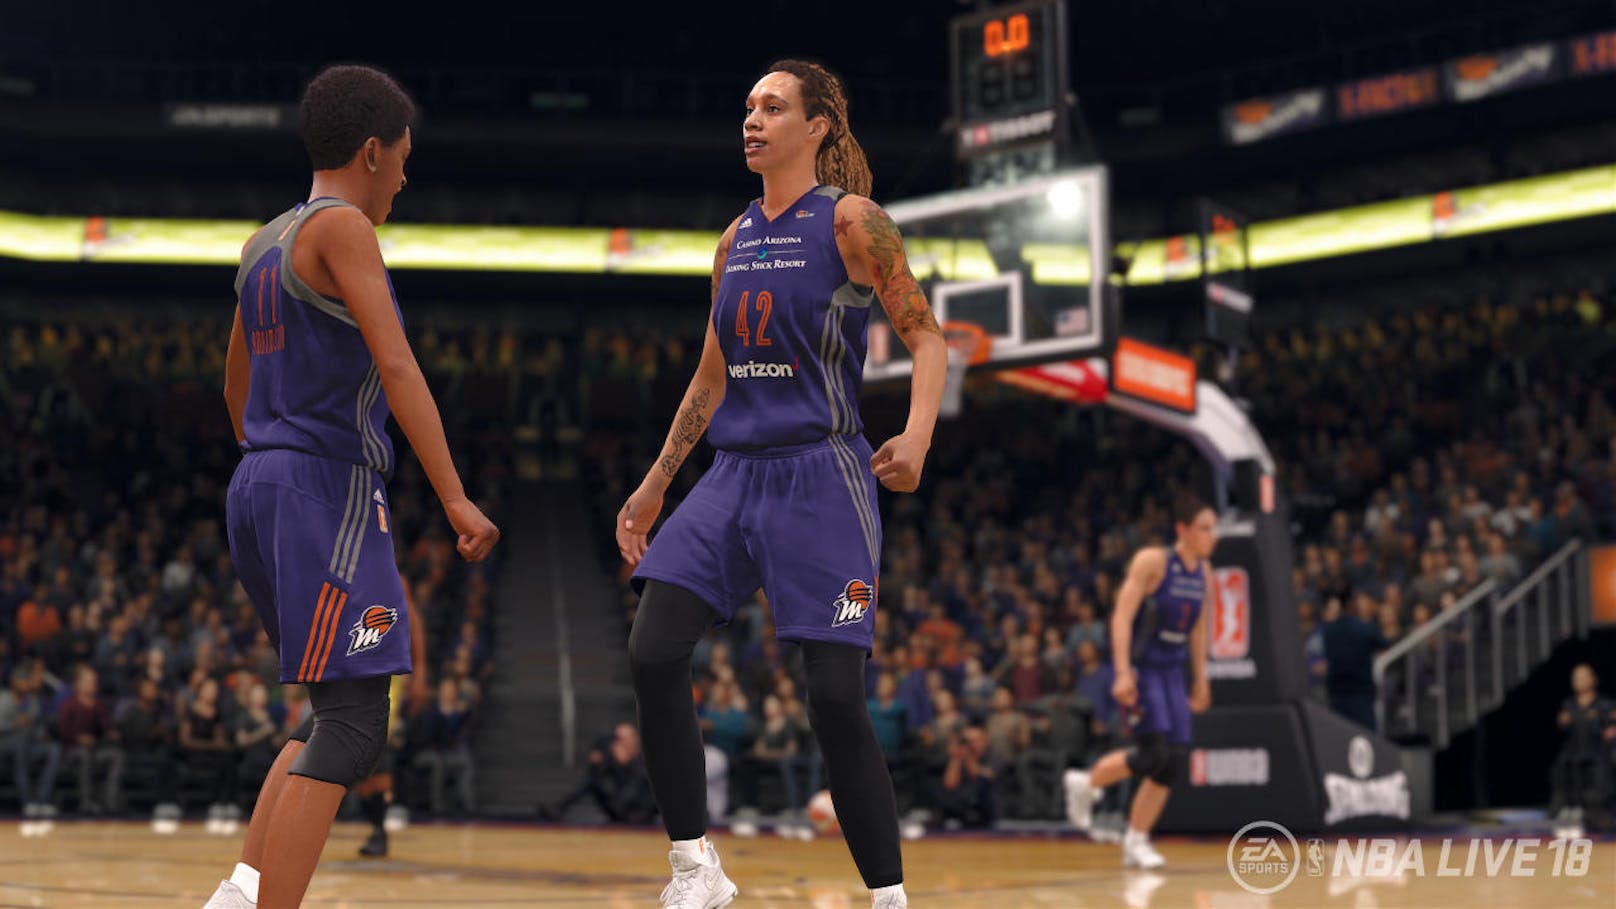 Positiv an NBA Live 18 ist hervorzuheben, dass EA Sports erstmals die besten weiblichen Basketball-Spielerinnen dieser Welt integriert hat. Dank "Motion Capturing" sehen diese auch nahe zu wie in Echt aus.